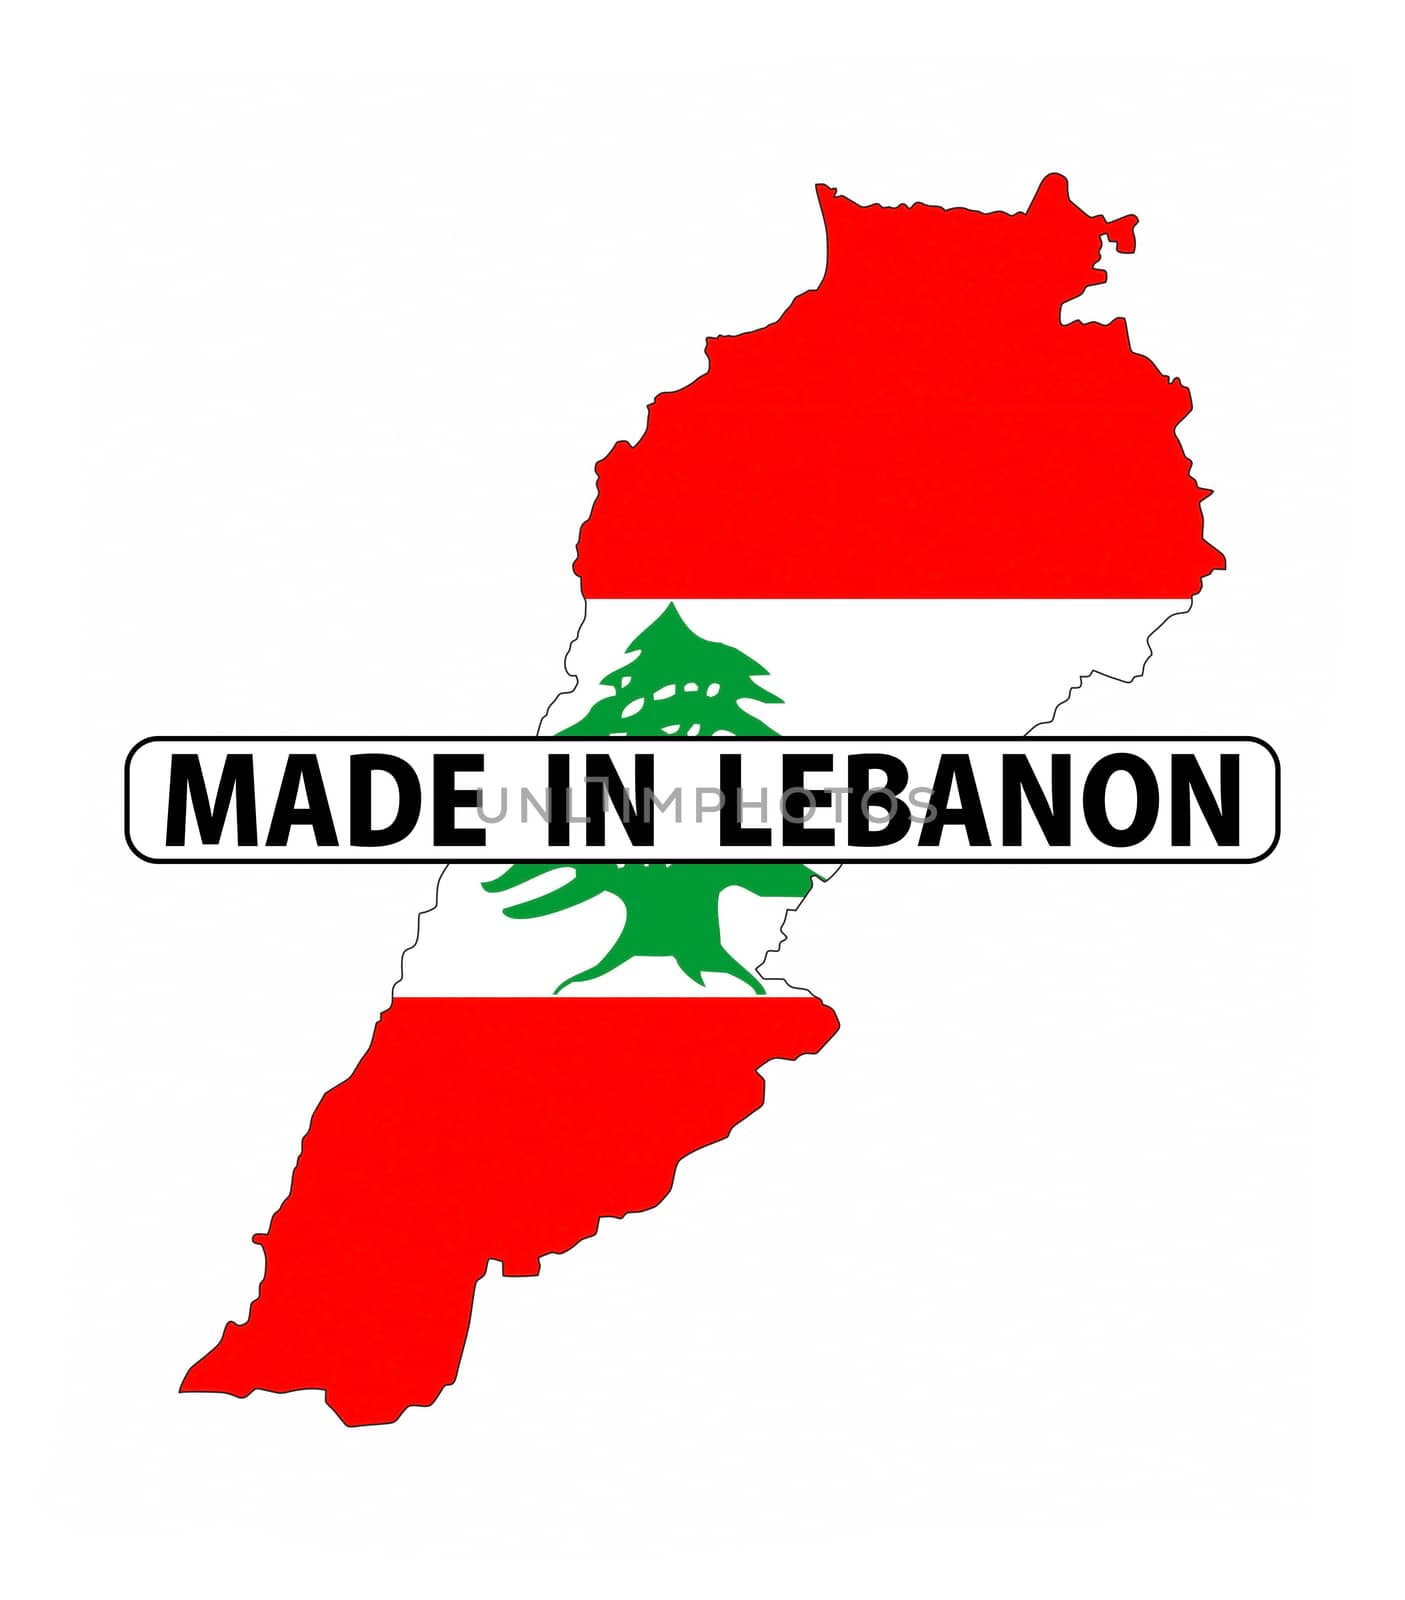 made in lebanon by tony4urban